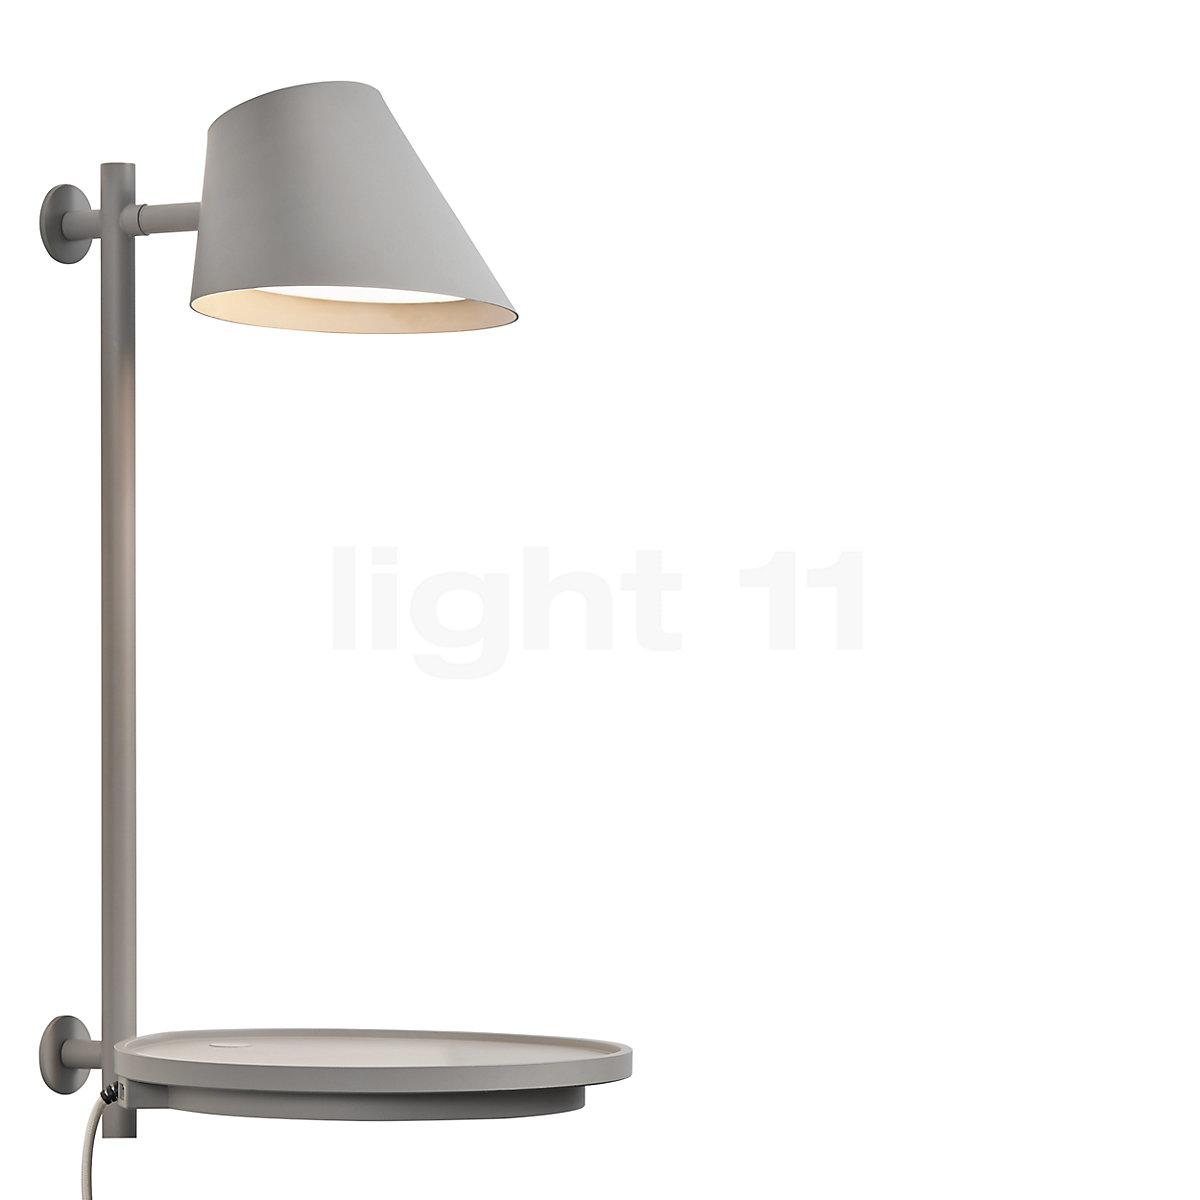 Accor Australische persoon Heel veel goeds Design for the People Stay Wandlamp LED kopen bij light11.nl